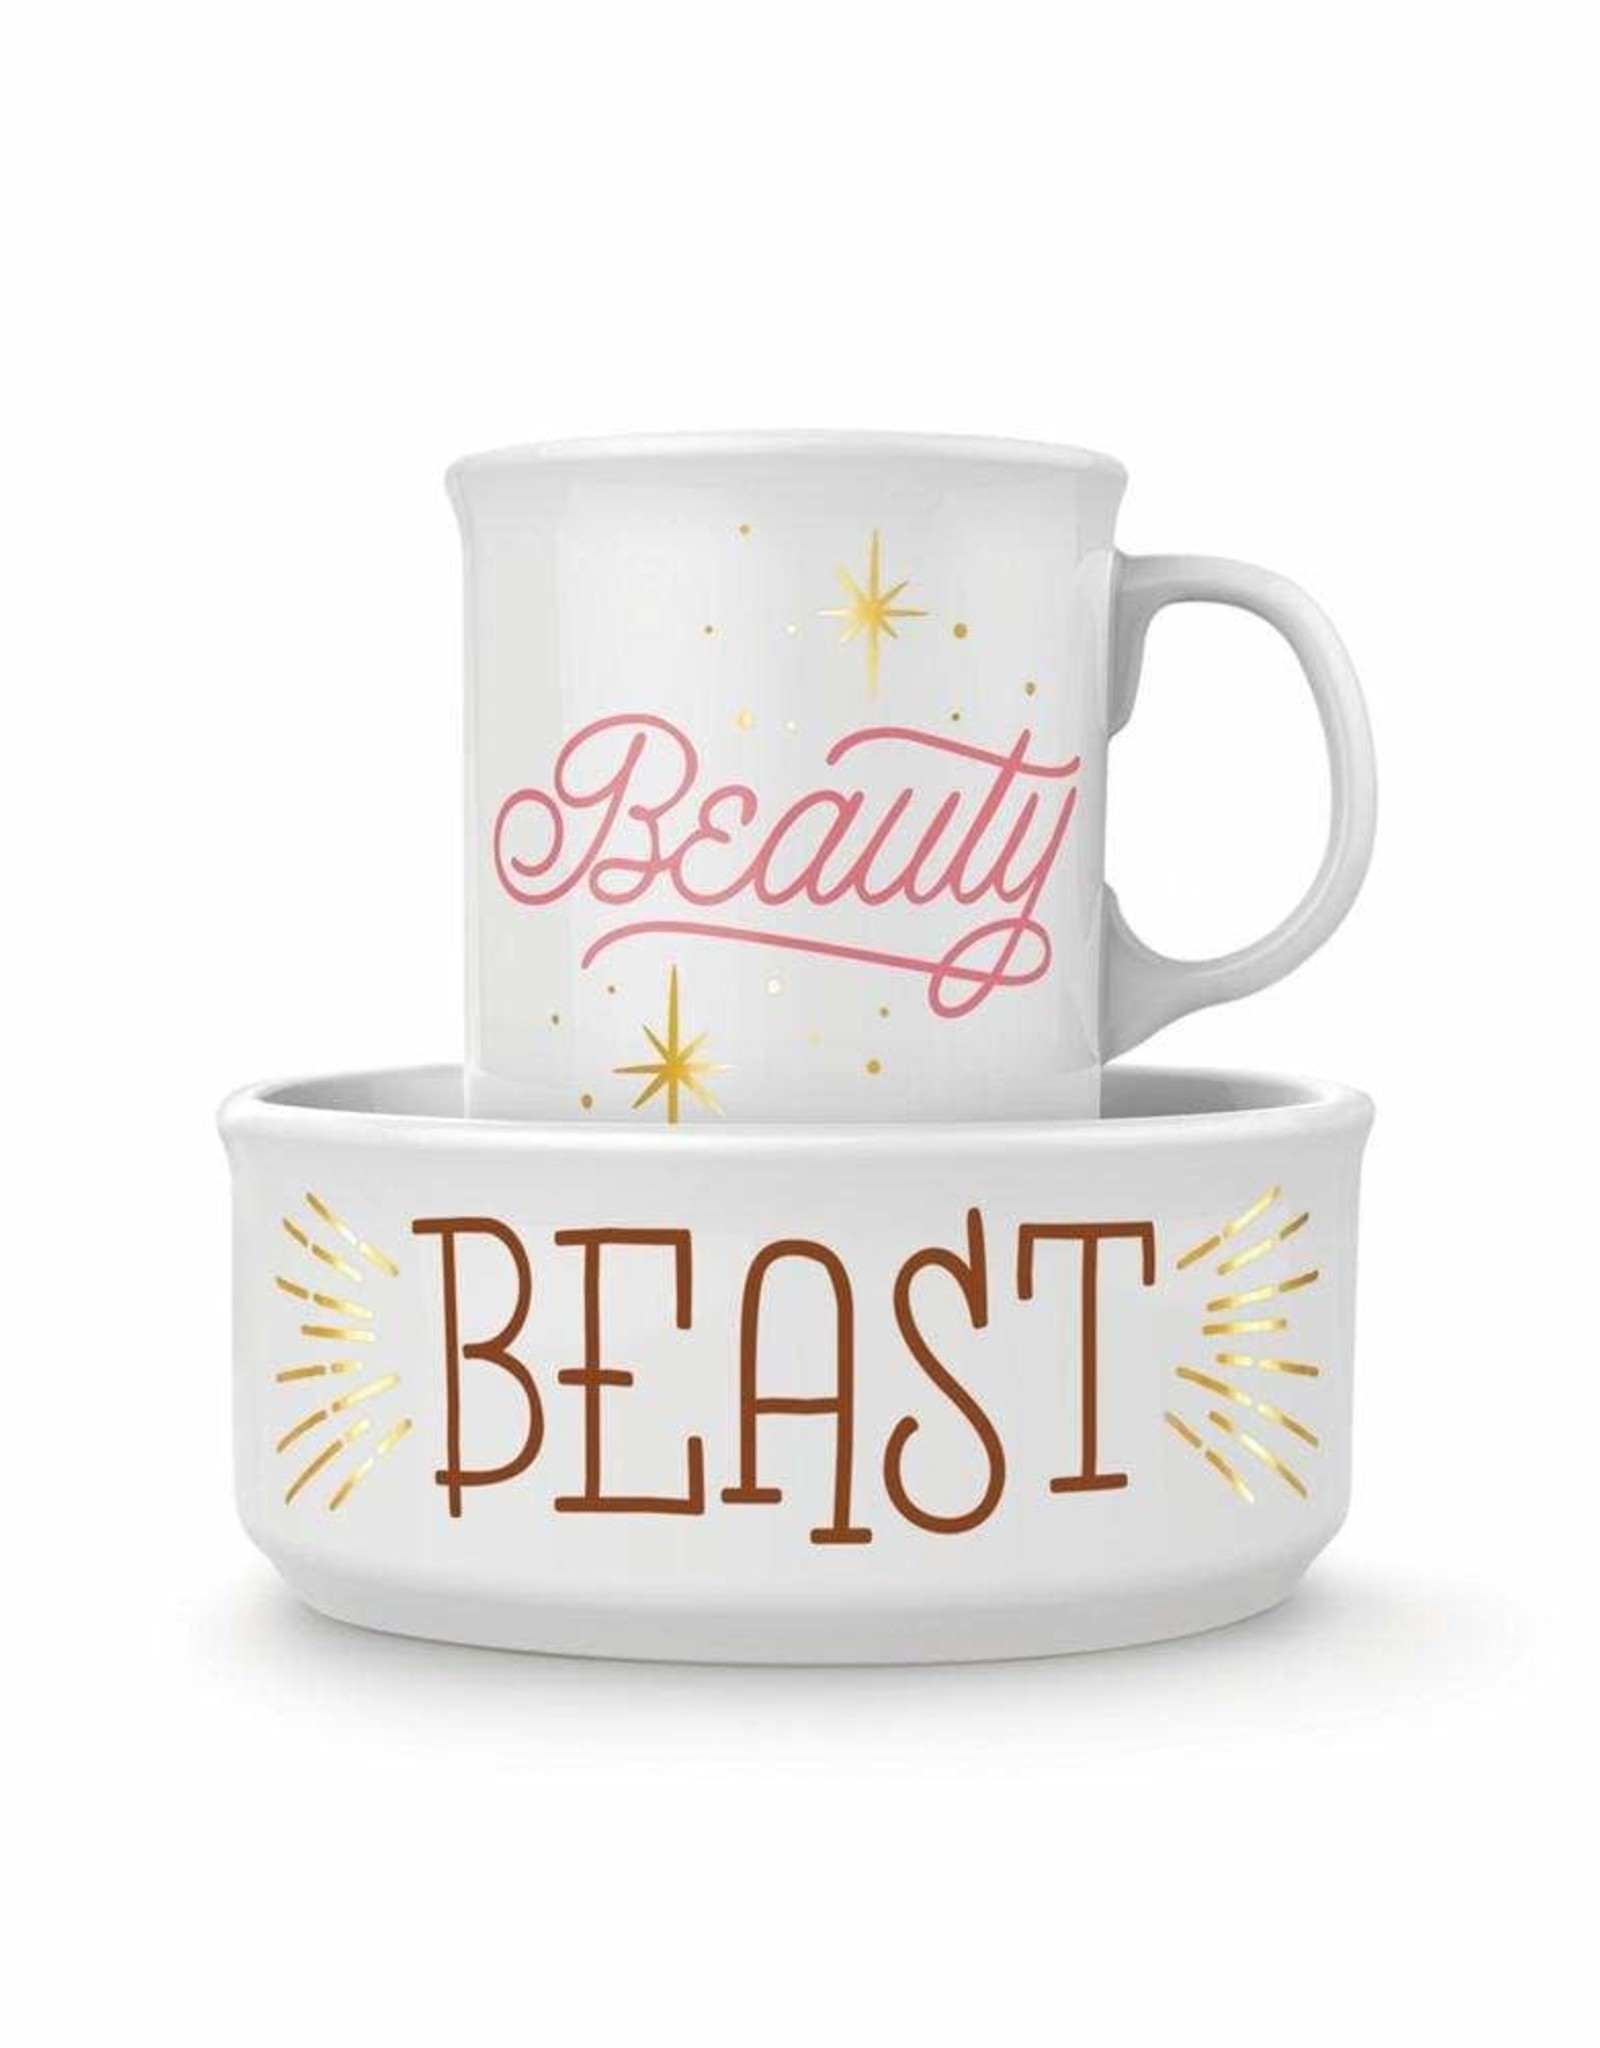 Beauty & Beast Ceramic Mug & Dog Bowl Set